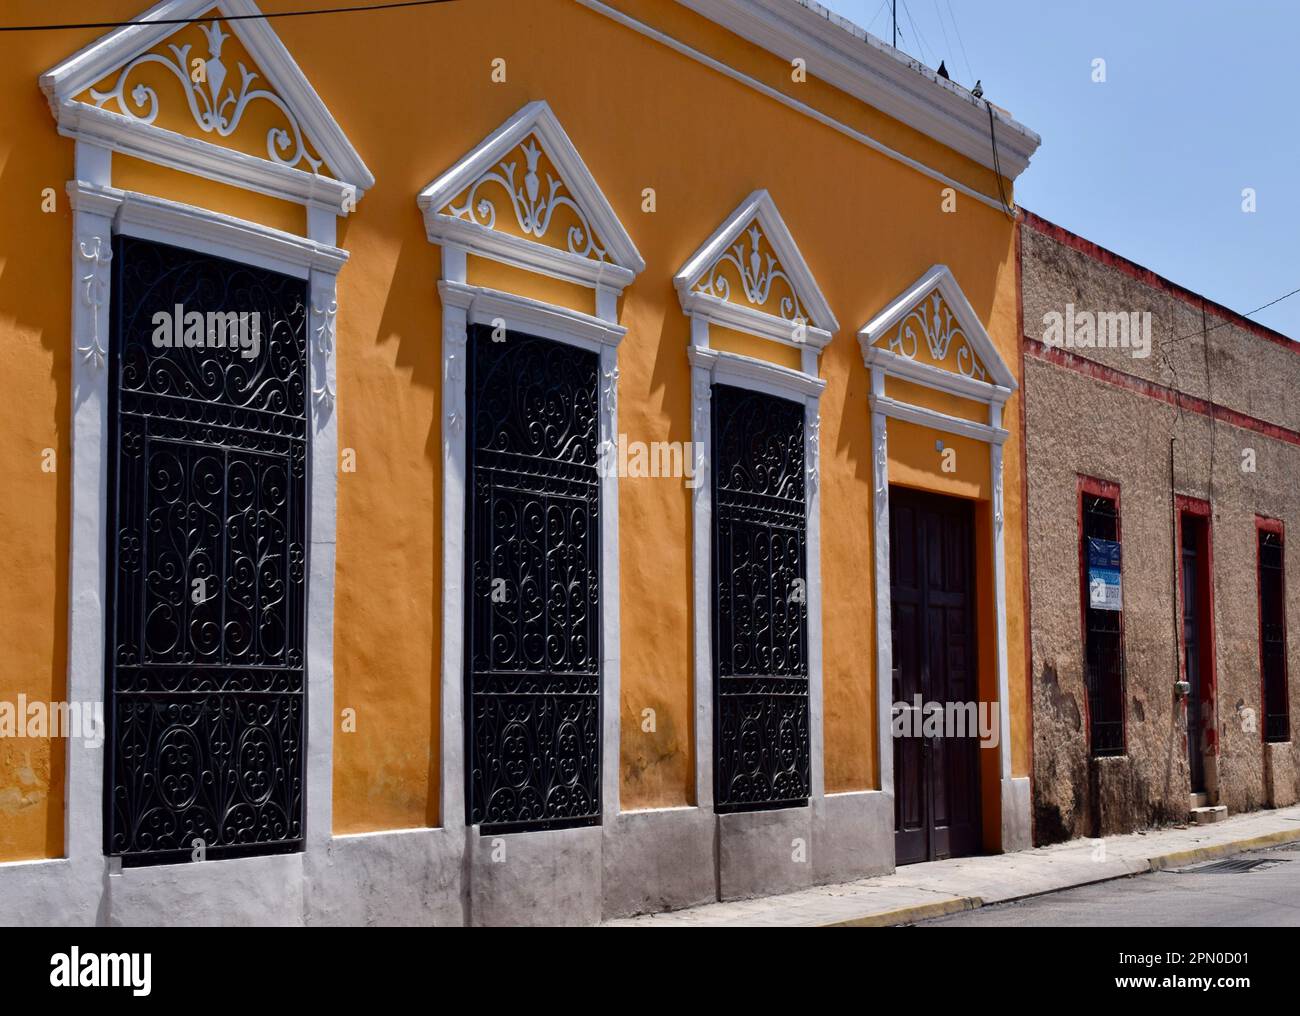 Un bâtiment colonial jaune restauré avec du fer forgé sur les fenêtres dans une rue de Merida, Yucatan, Mexique. Banque D'Images